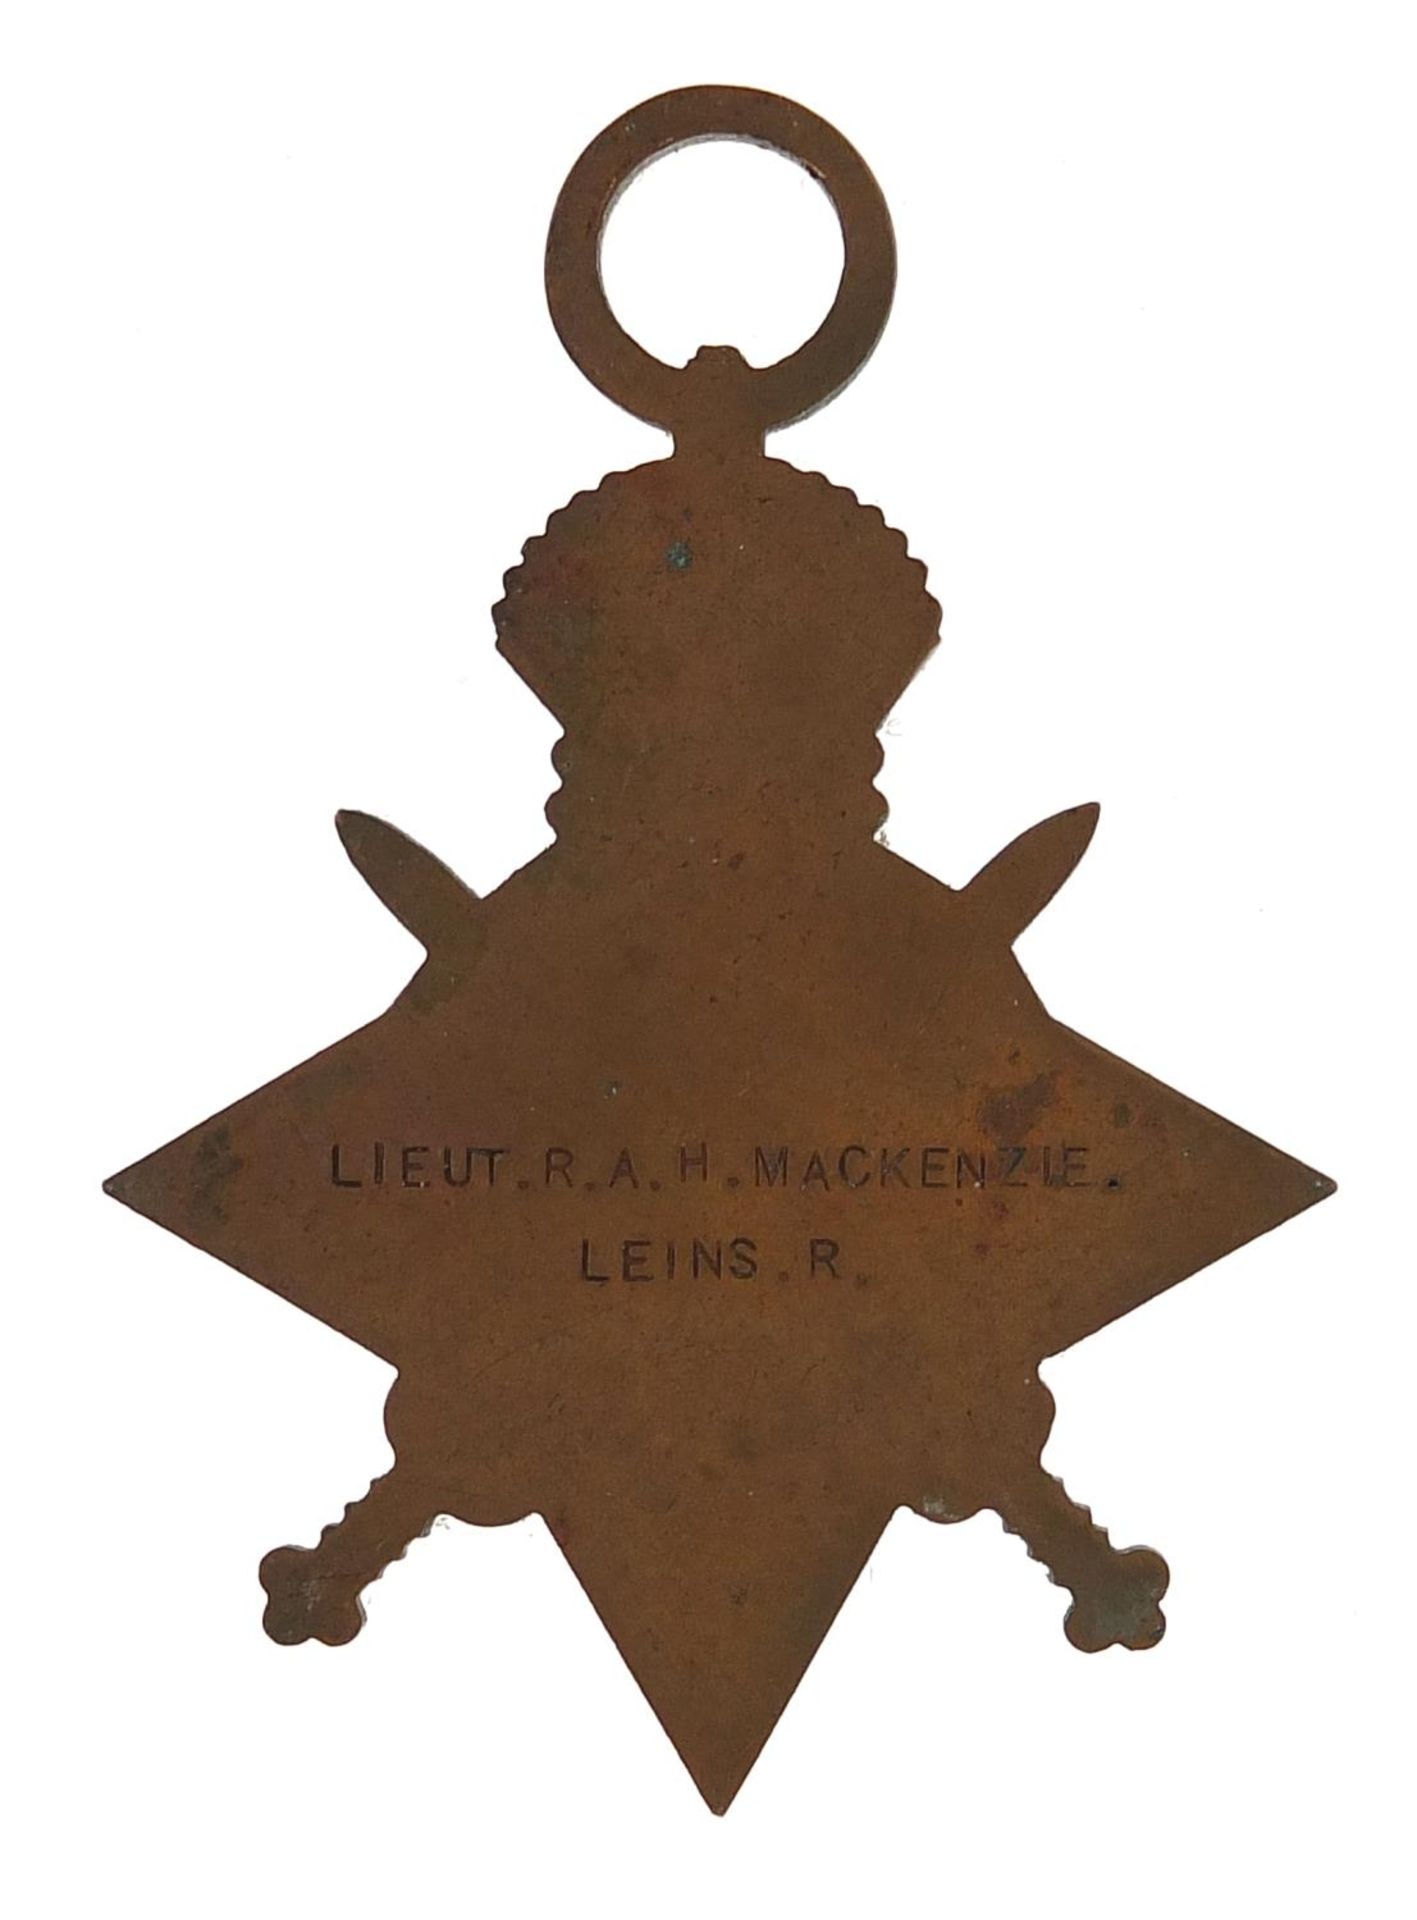 British military World War I 1914-15 star awarded to LIEUT.R.A.H.MACKENZIE.LEINS.R. - Bild 2 aus 2